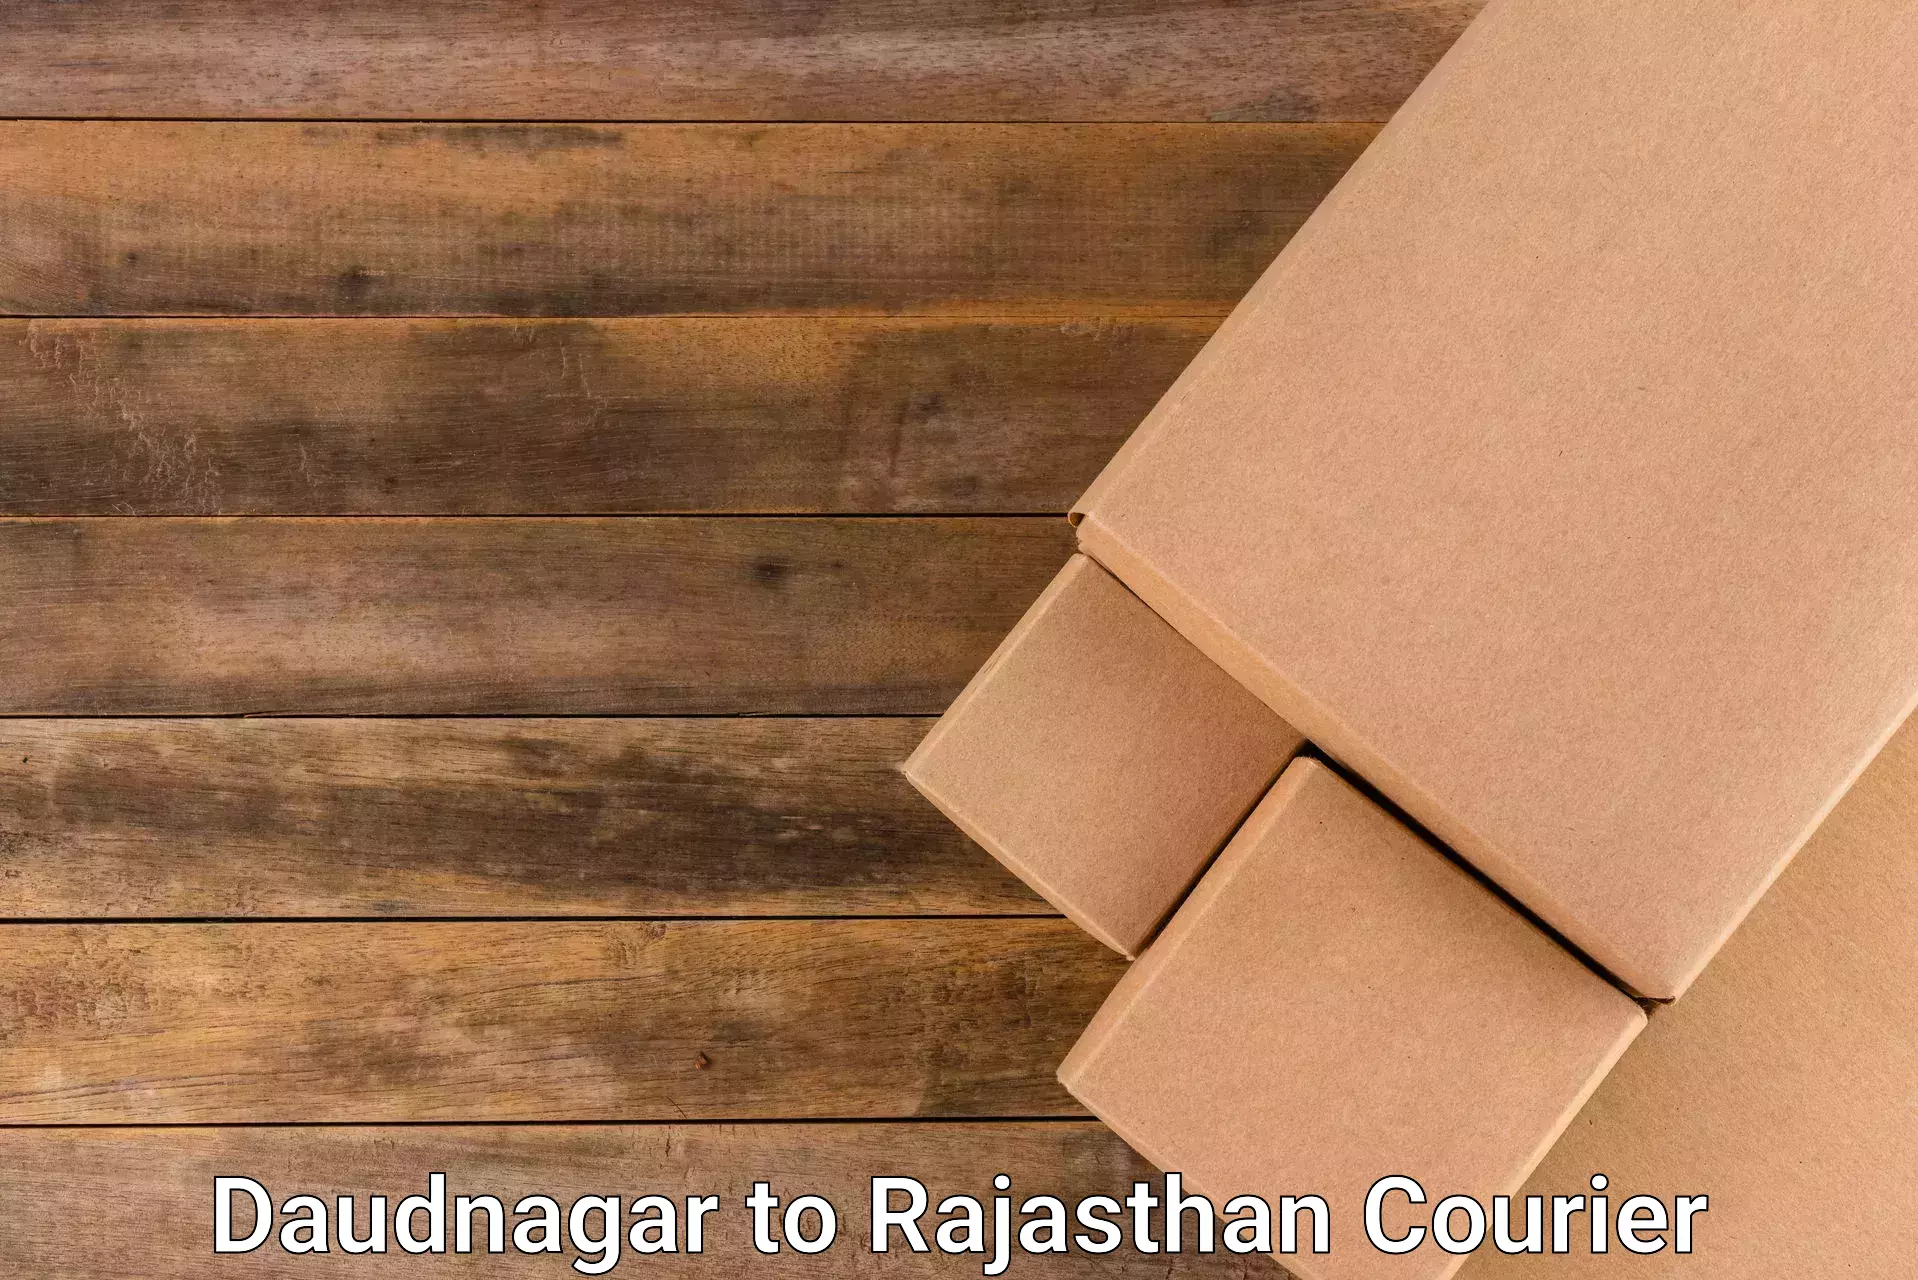 International parcel service Daudnagar to Rajasthan